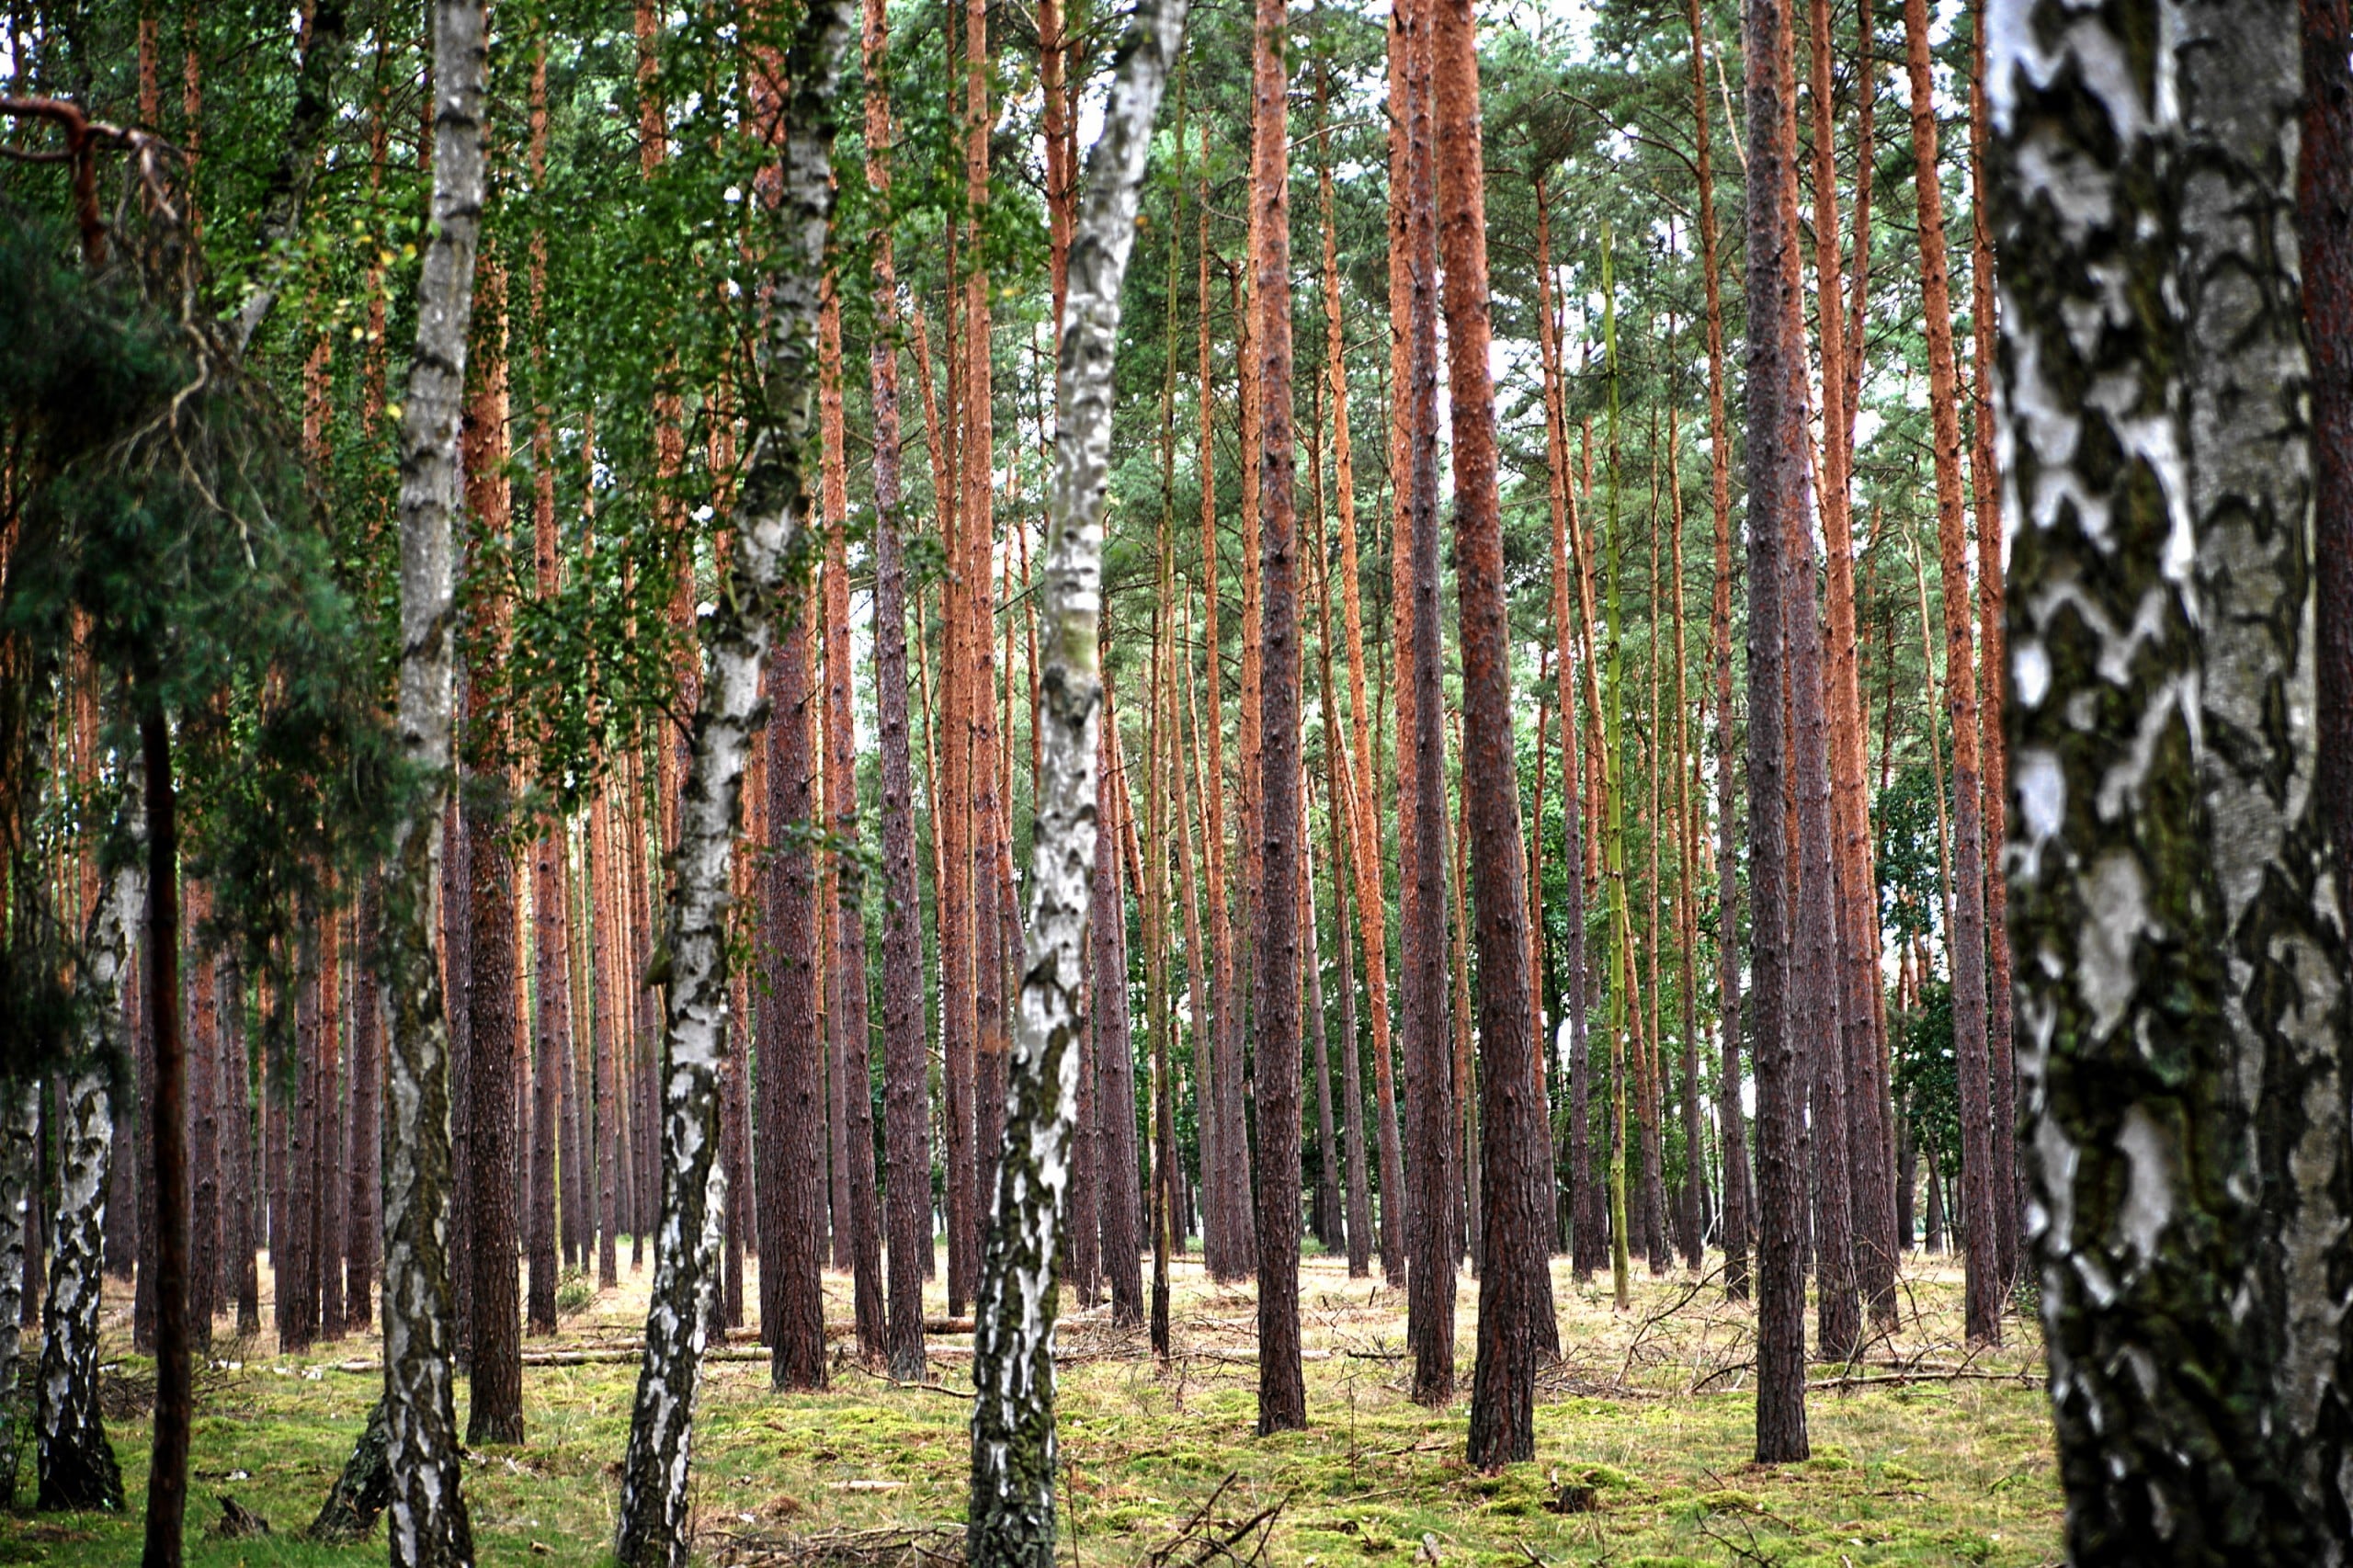 Der brandenburgische Kiefernwald ist eine wichtige natürliche Ressource. Bildquelle: Mboesch, CC BY-SA 4.0 , via Wikimedia Commons